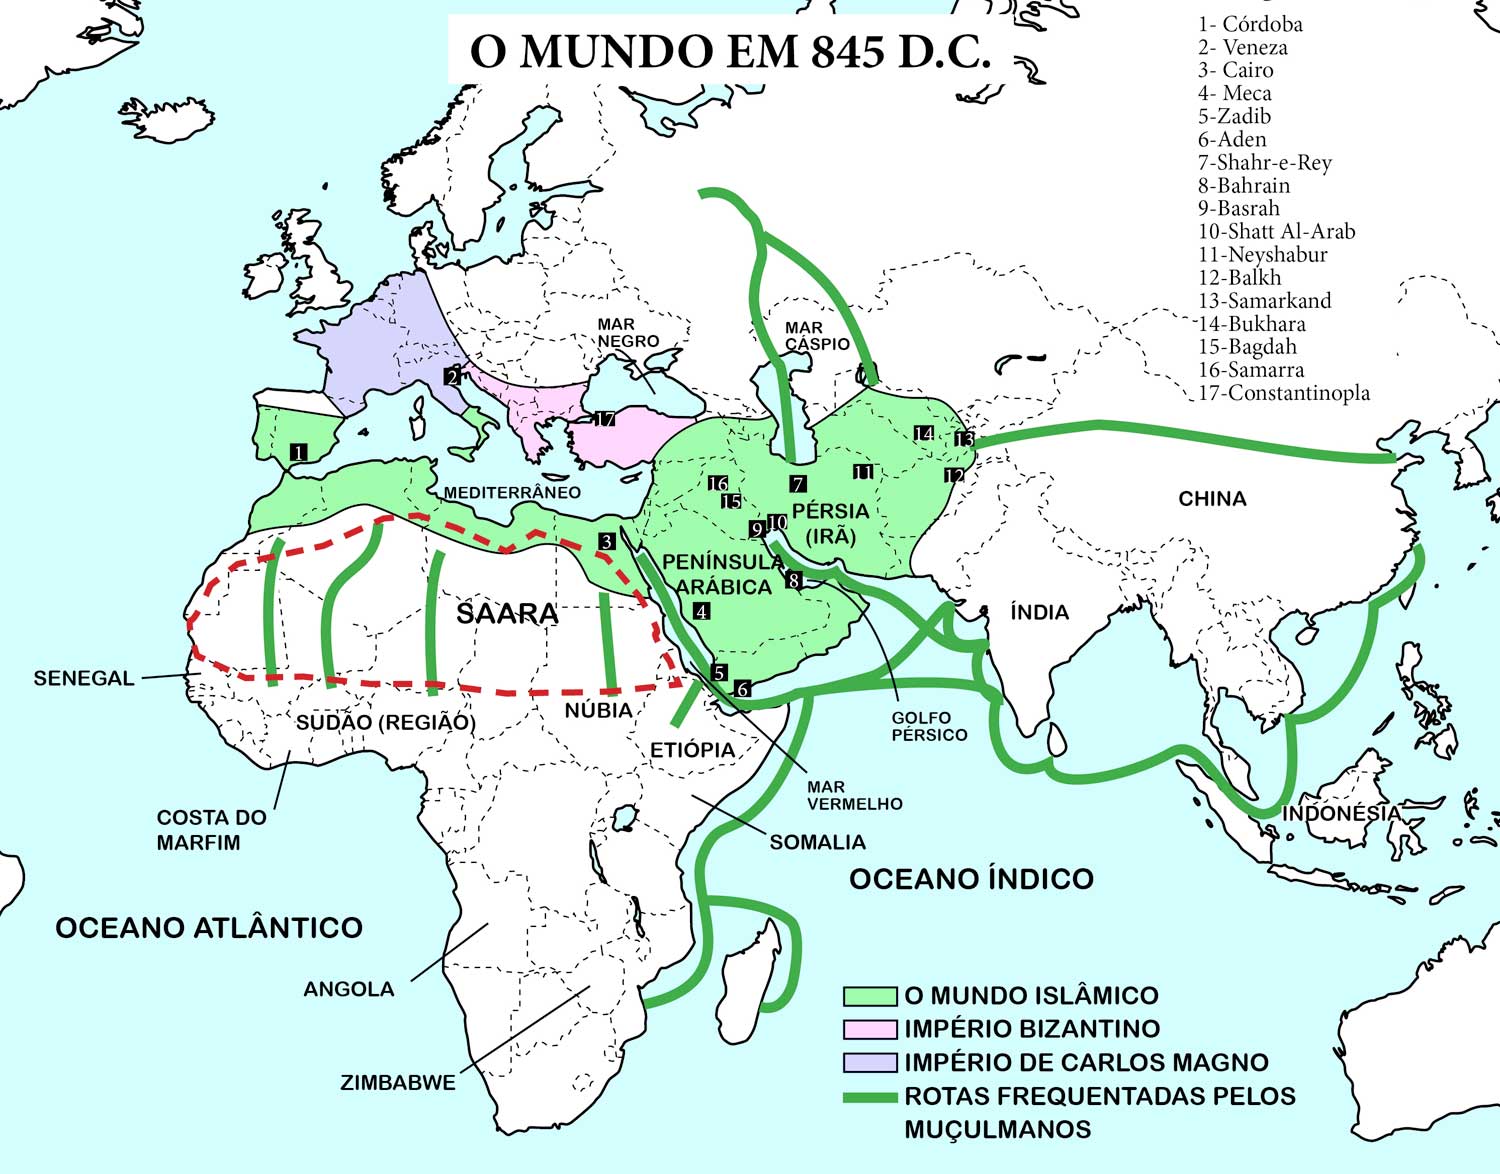 Mapa do Mundo com os principais impérios em 845